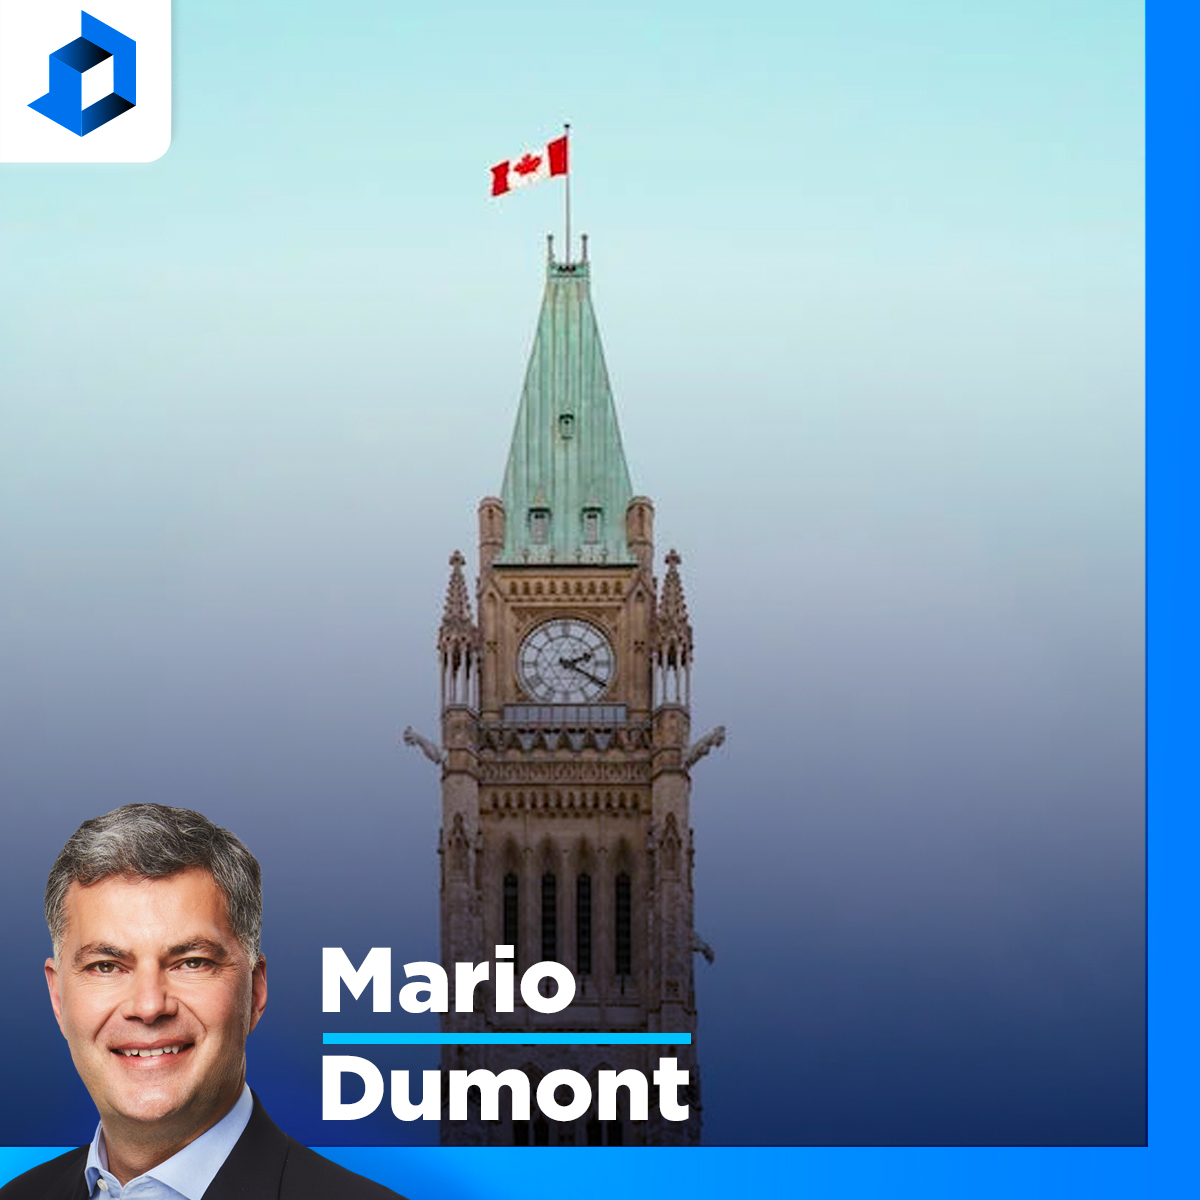 Programme dentaire : «Il y a comme une image de M. Trudeau, de manque de rigueur», dit Mario Dumont